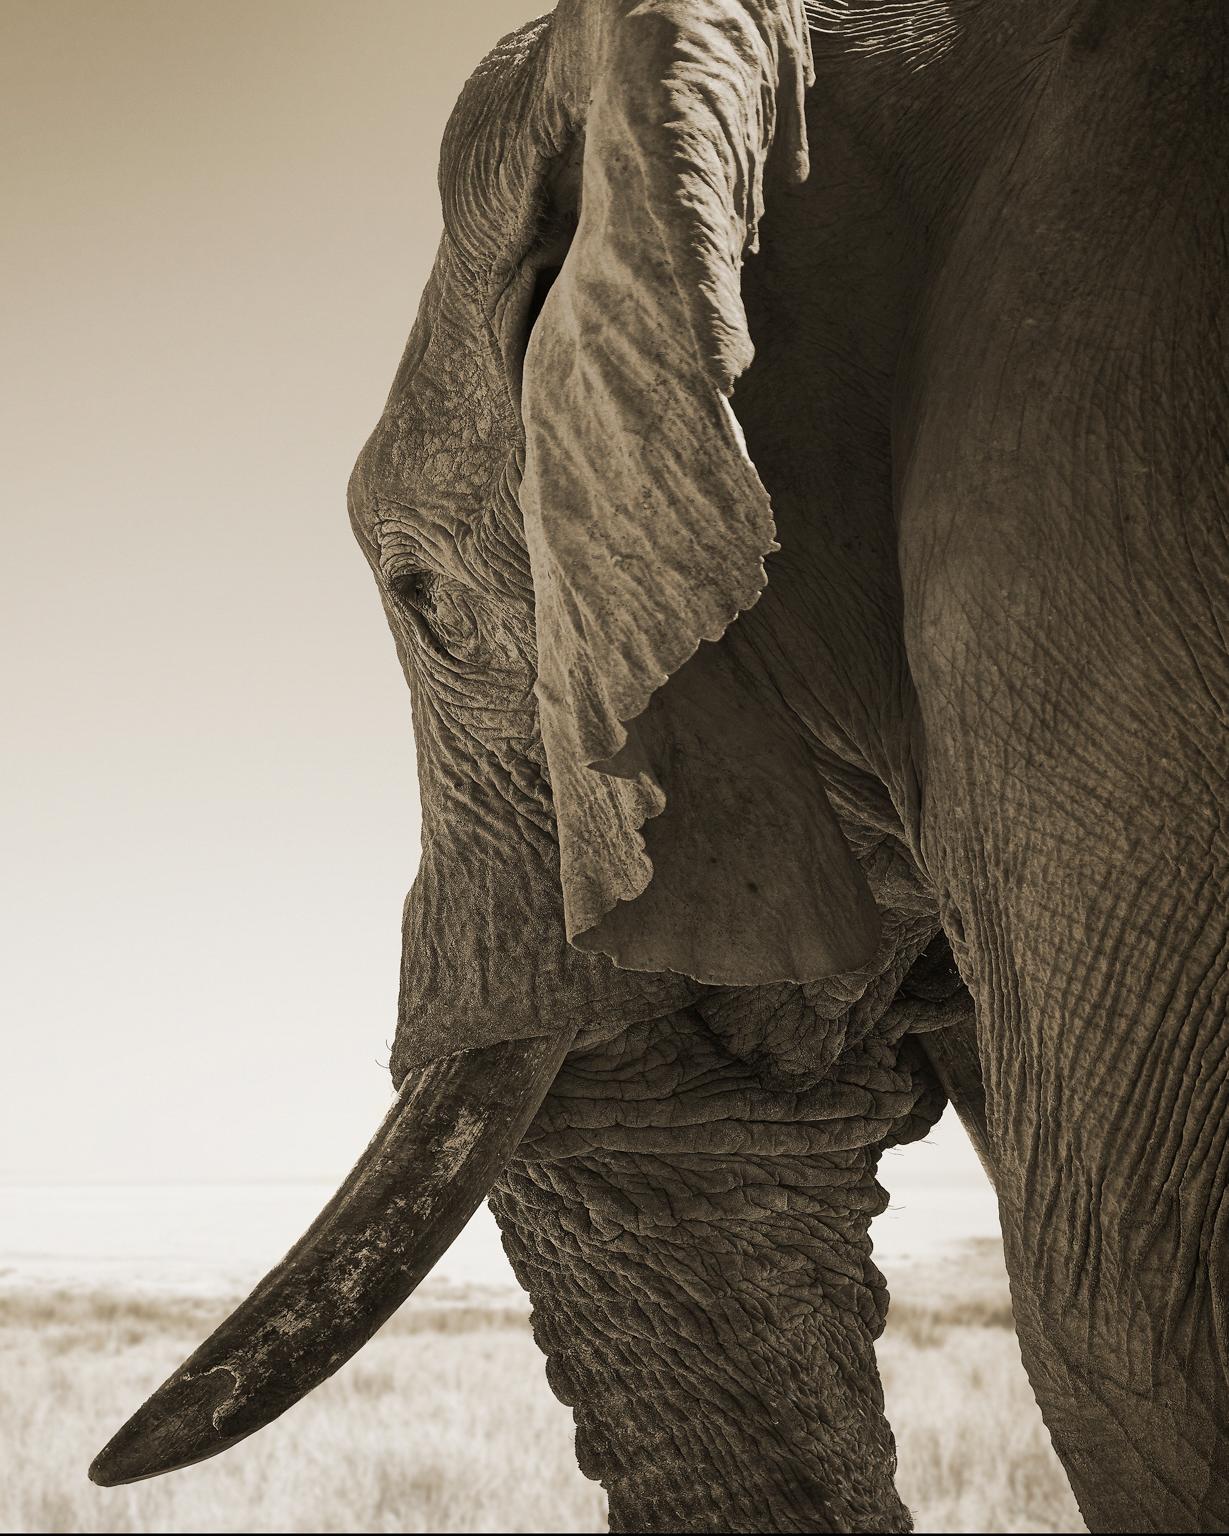 Elephant-02, Namibia, 2016. Archivalischer Pigmentdruck. Auflage von 7.
Signiert, datiert und nummeriert vom Künstler.

Chris Gordaneer ist einer der leidenschaftlichsten Fotografen unserer Zeit. Seine Fotografie bewegt sich an der Schnittstelle